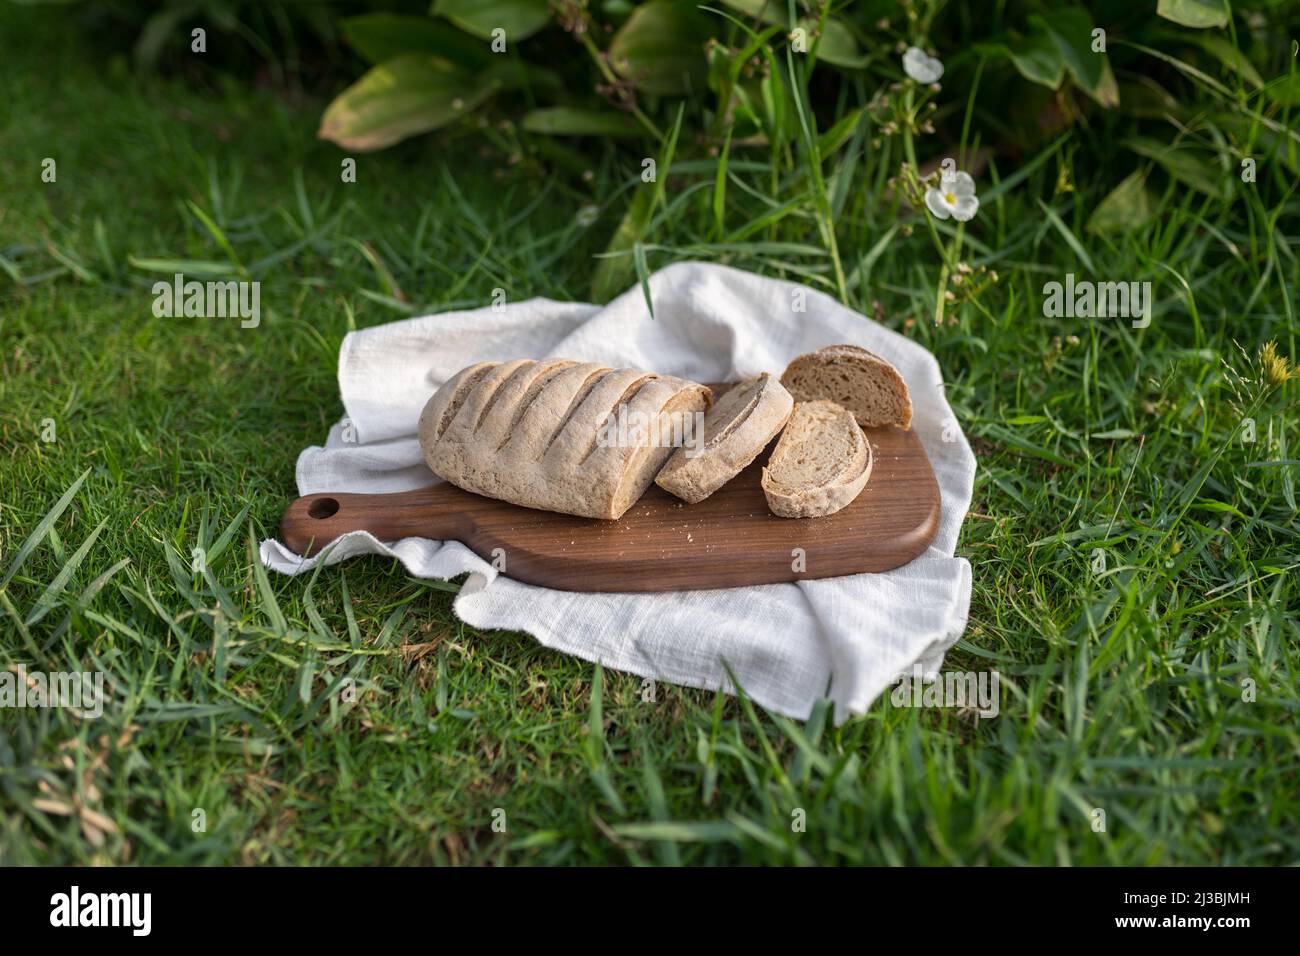 Composizione del pane fatto in casa con farina bianca su tavola di legno con tovagliolo bianco sull'erba verde. Foto di alta qualità Foto Stock